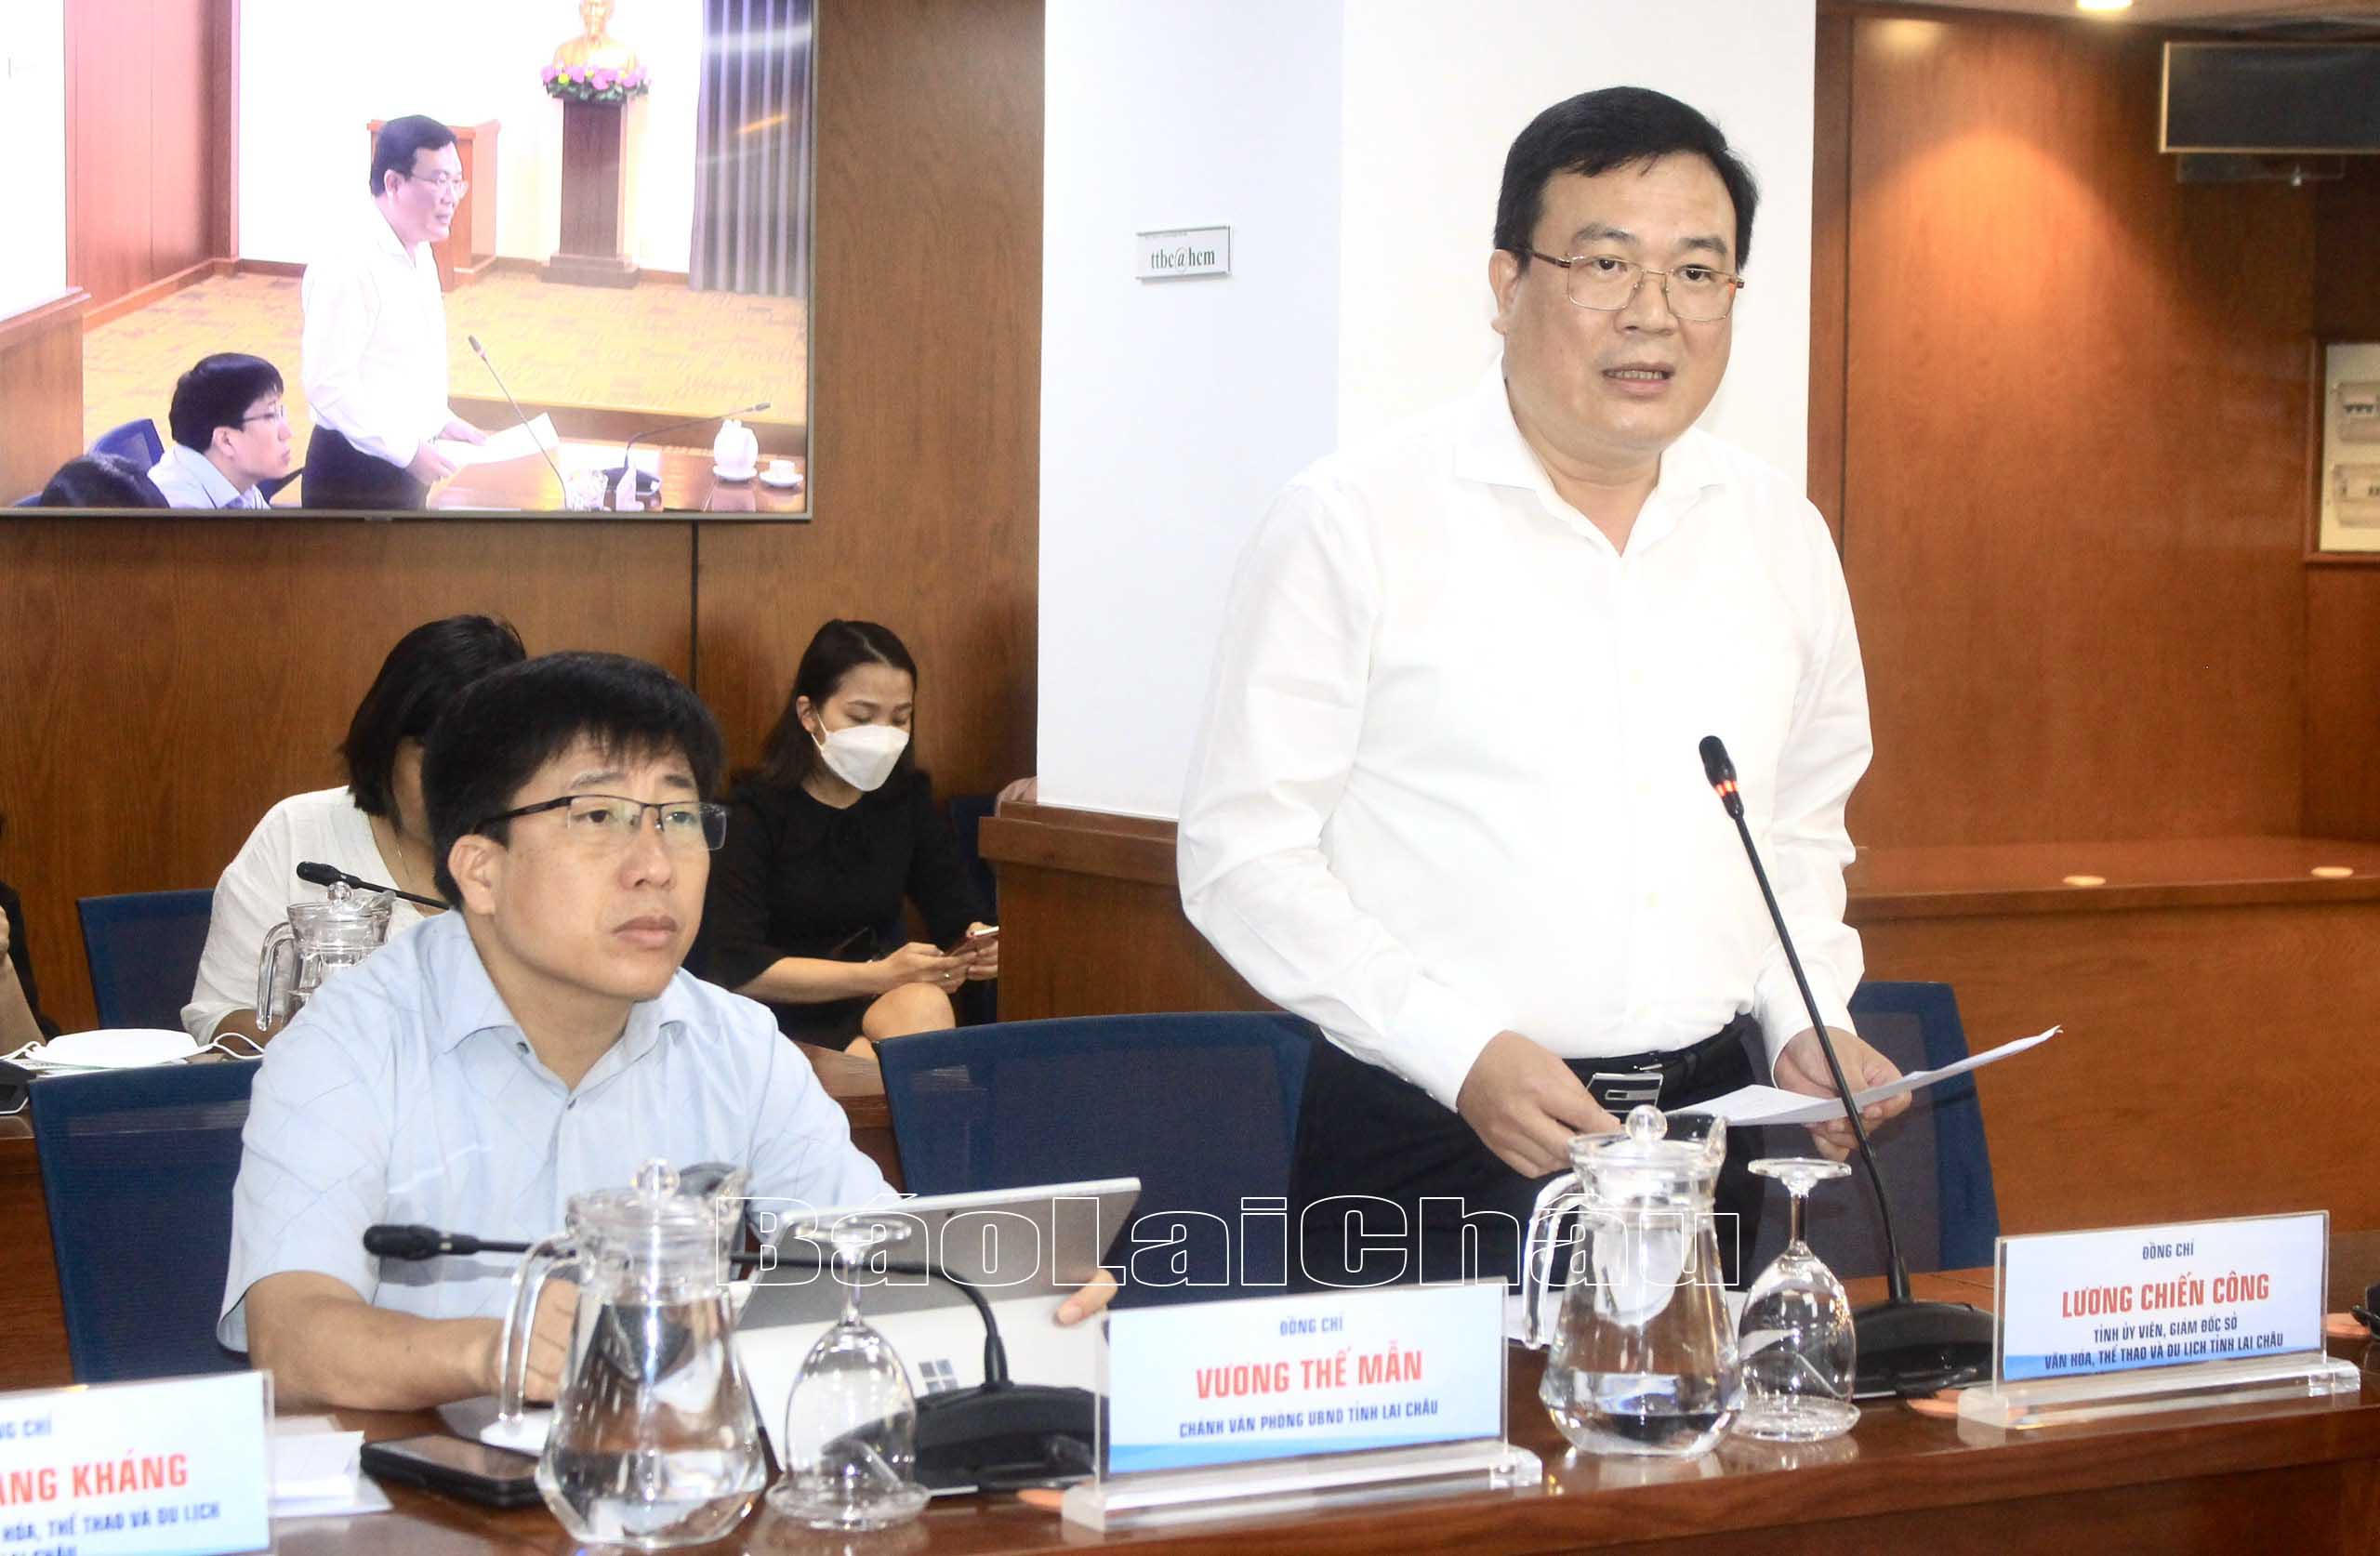 Đồng chí Lương Chiến Công - Tỉnh ủy viên, Giám đốc Sở Văn hóa, Thể thao và Du lịch tỉnh Lai Châu thông qua Thông cáo Báo chí.